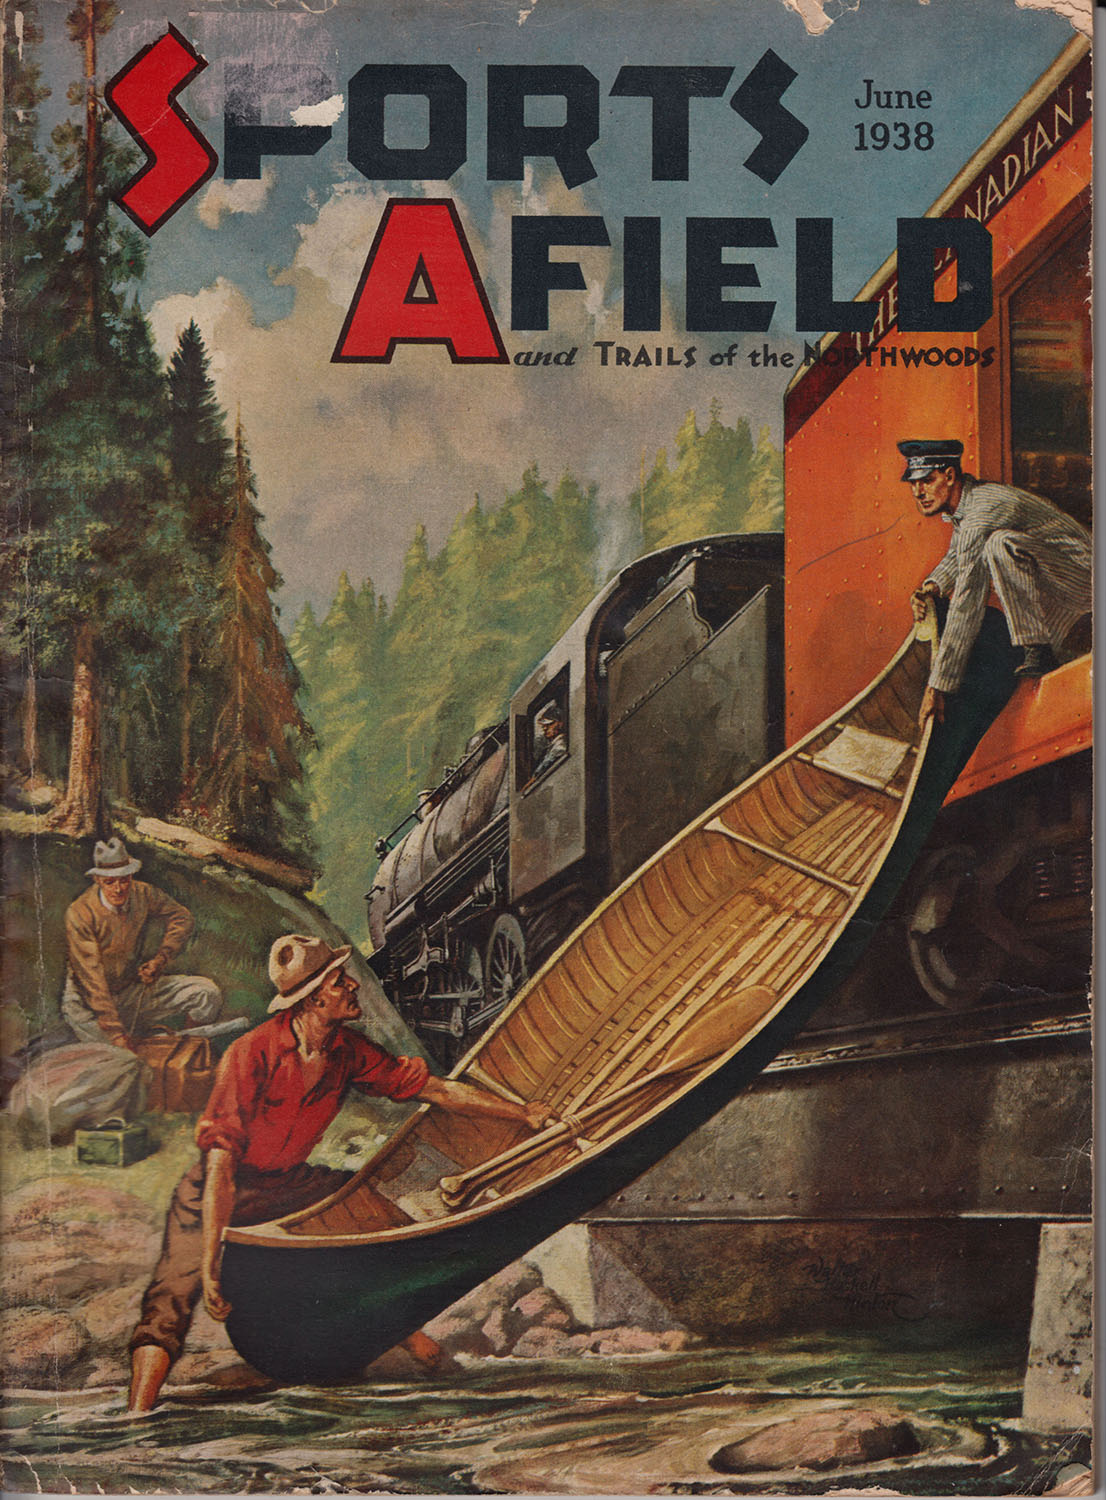 Sports Afield June 1938